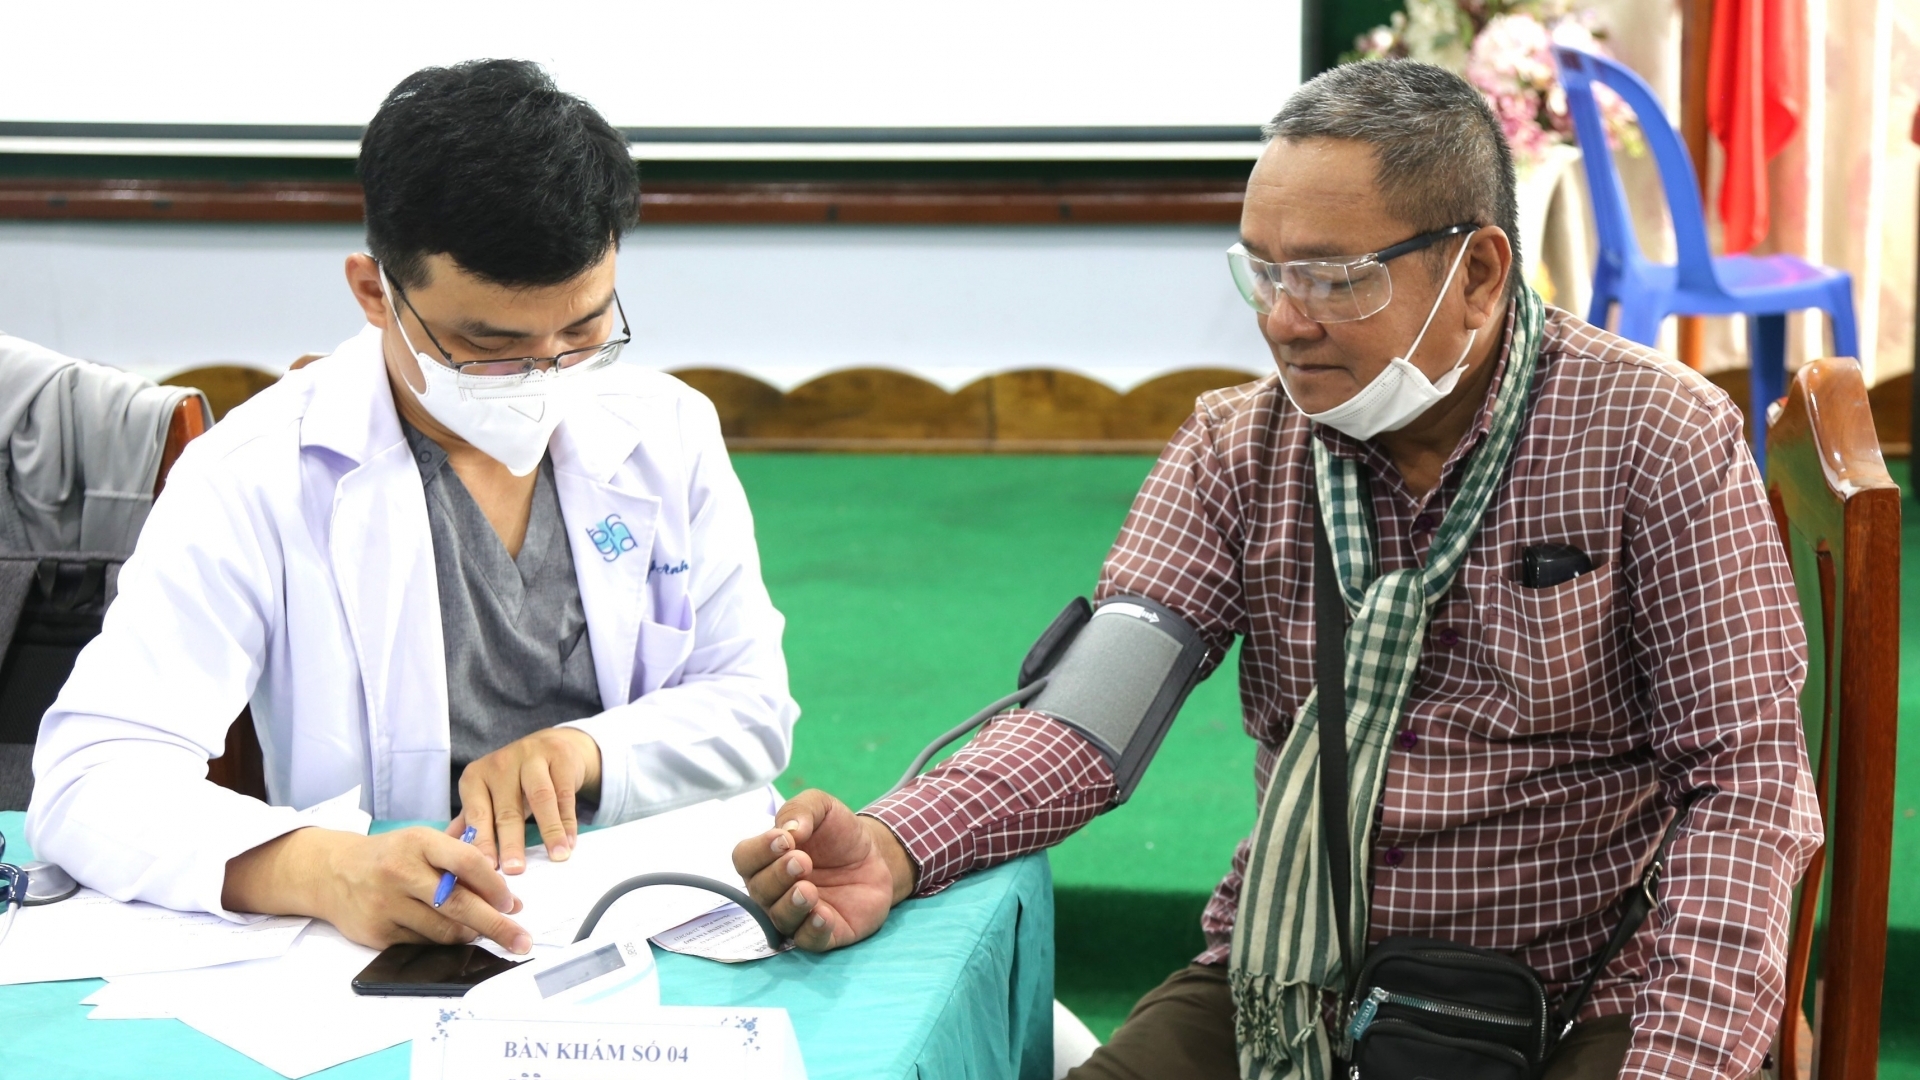 为贫困柬埔寨人民和越裔柬埔寨人开展义诊、送上药品和慰问品